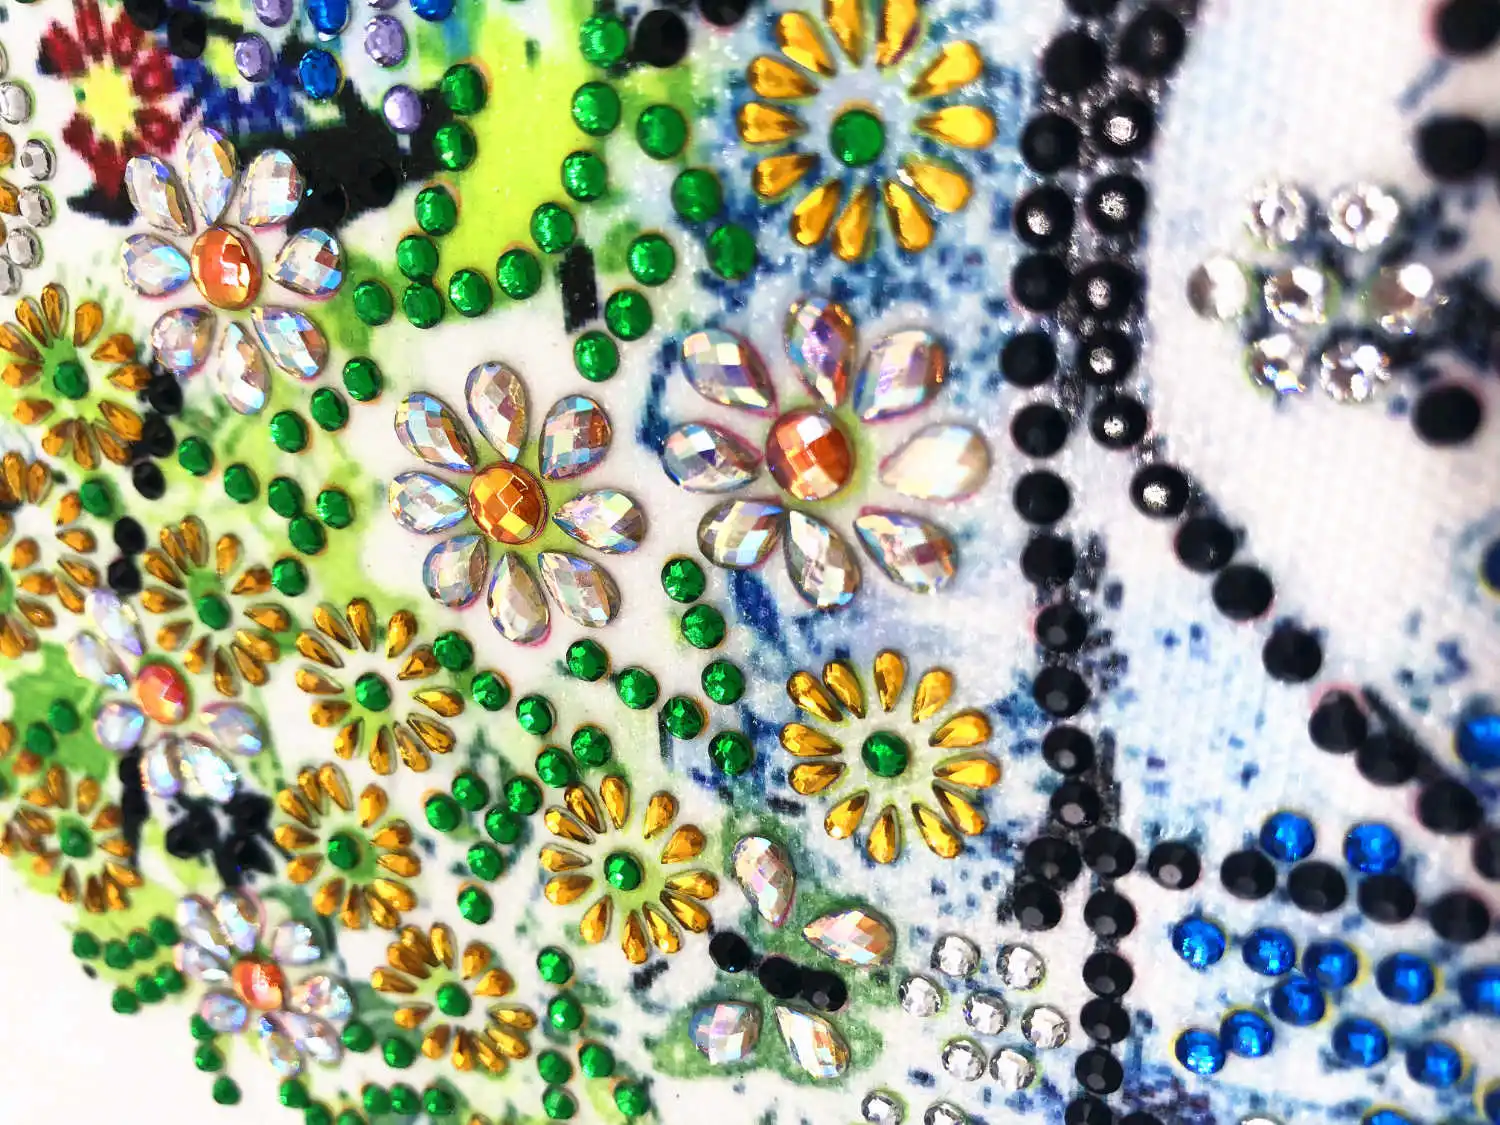 AZQSD алмазная живопись мозаика дерево особой формы ручной работы подарок картина стразы цветок дрель домашний декор 24x24 см